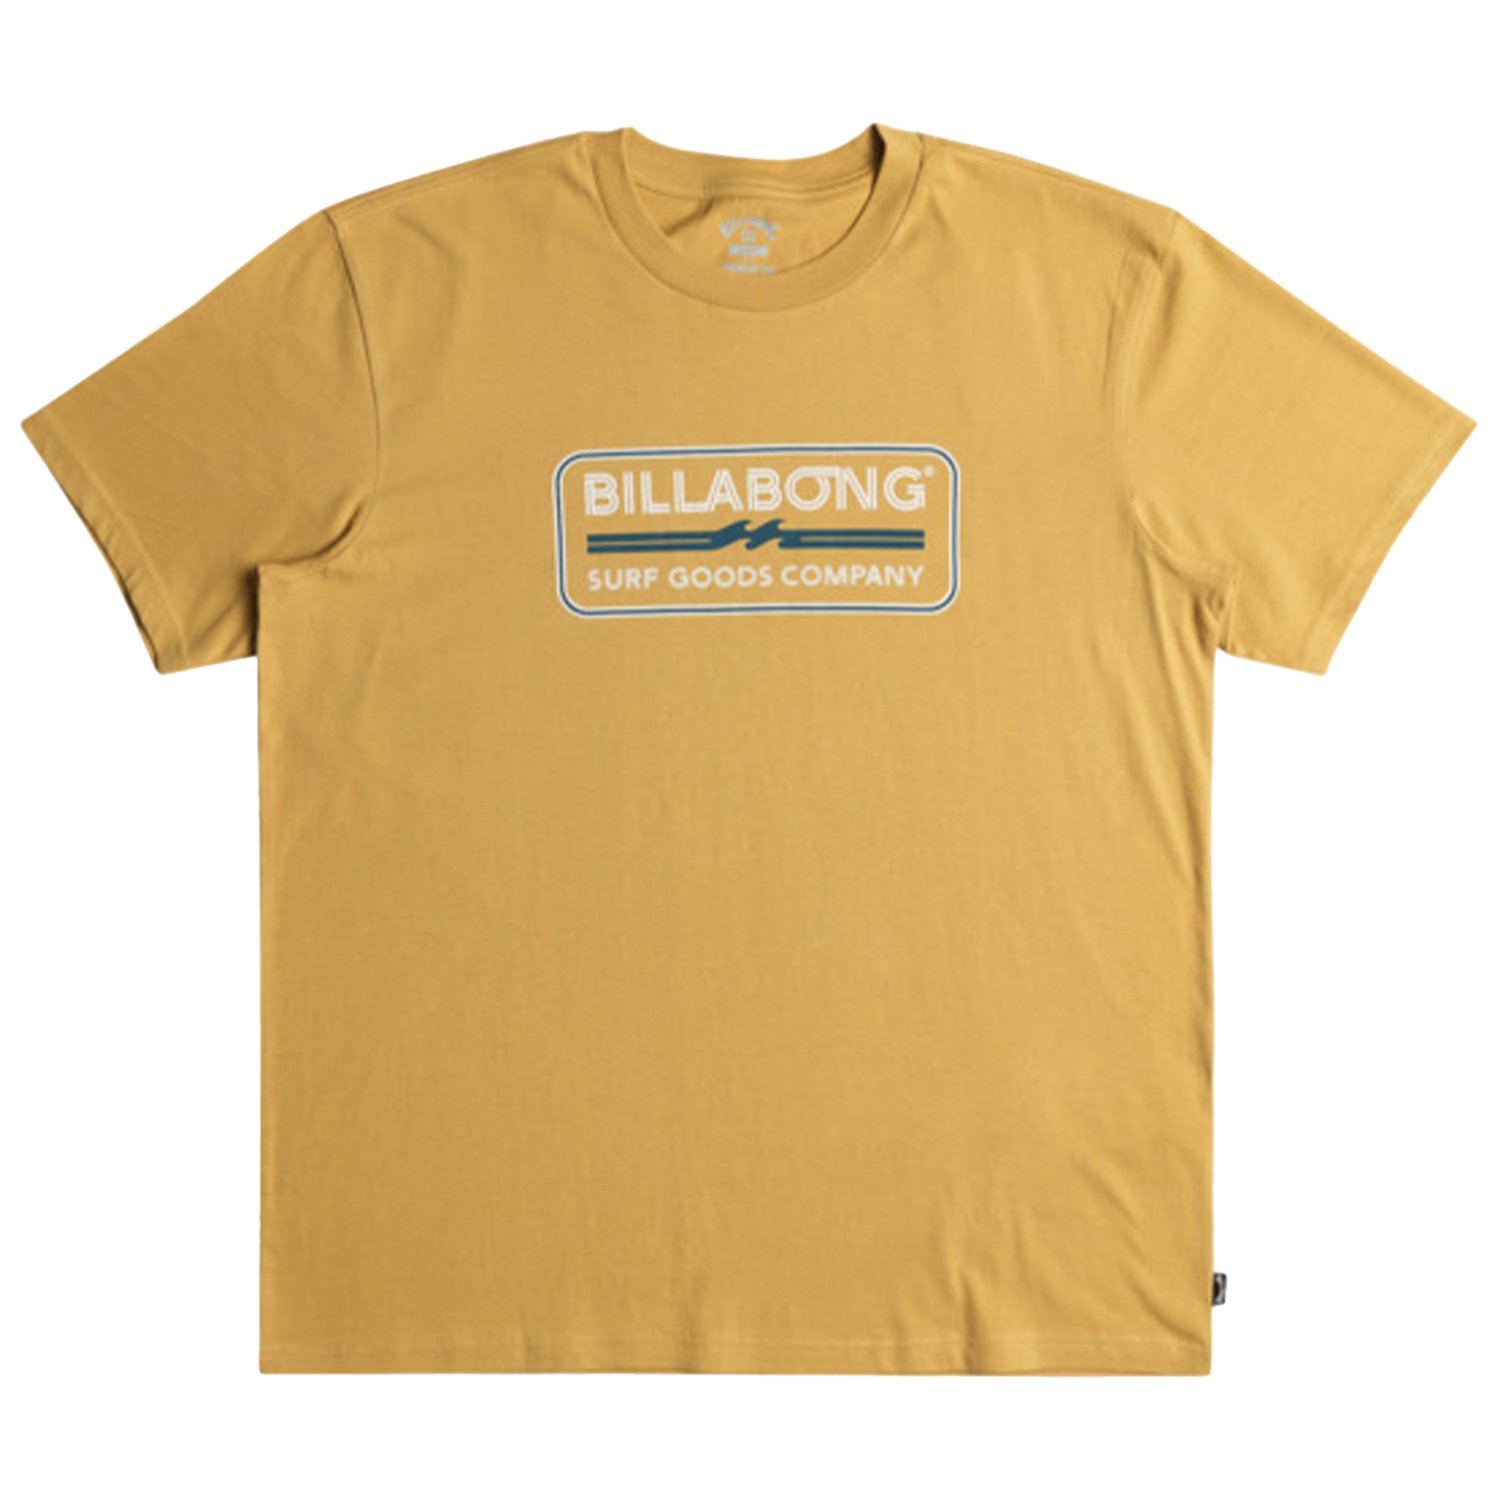 Billabong Trademark Erkek Tişört - Altın Sarısı - 1